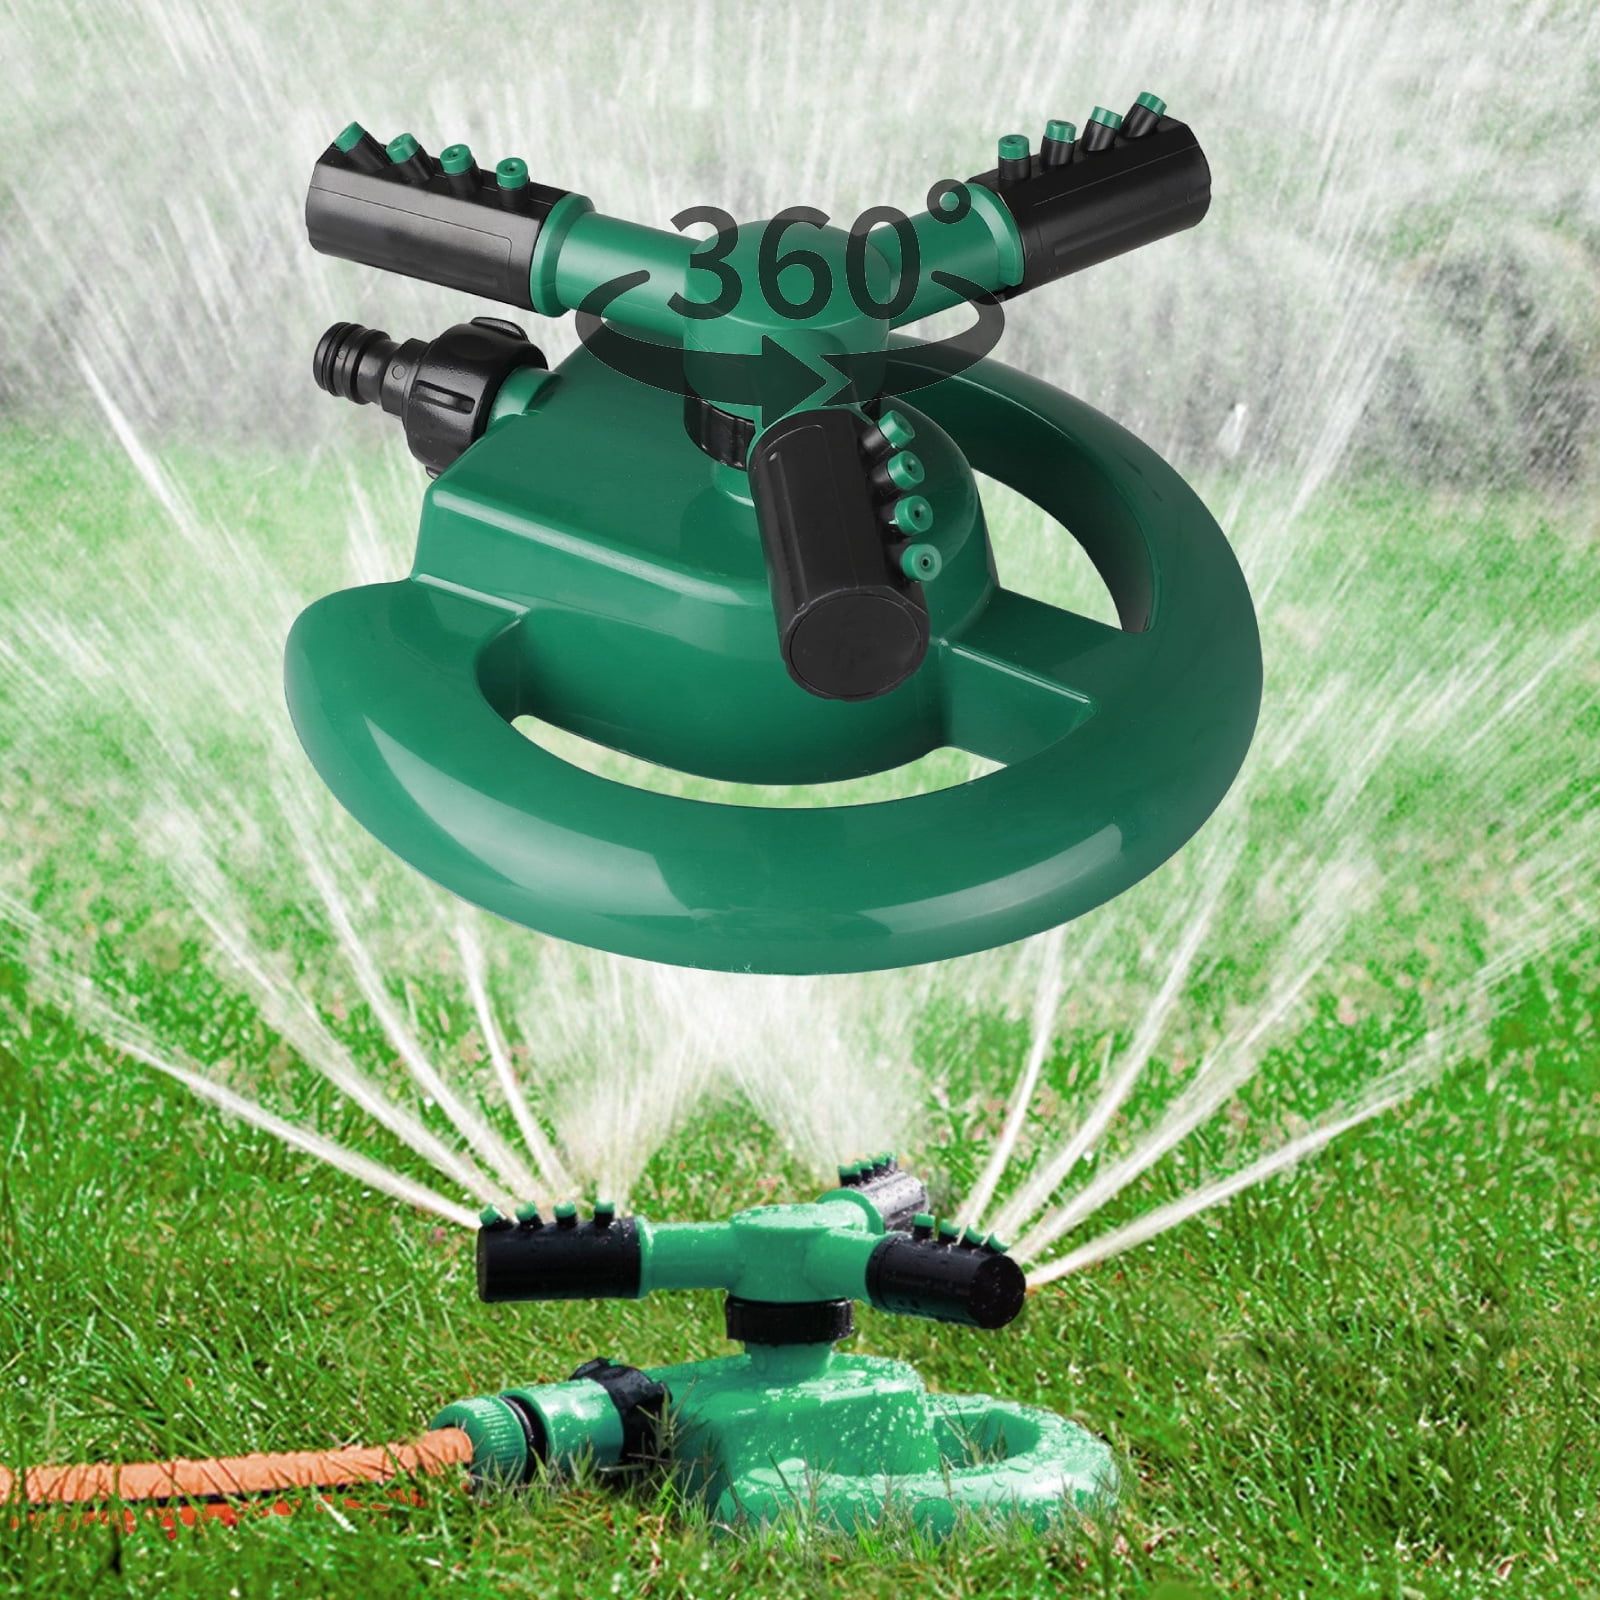 TSV Lawn Sprinkler, 360° Rotating Automatic Garden Water Sprinkler